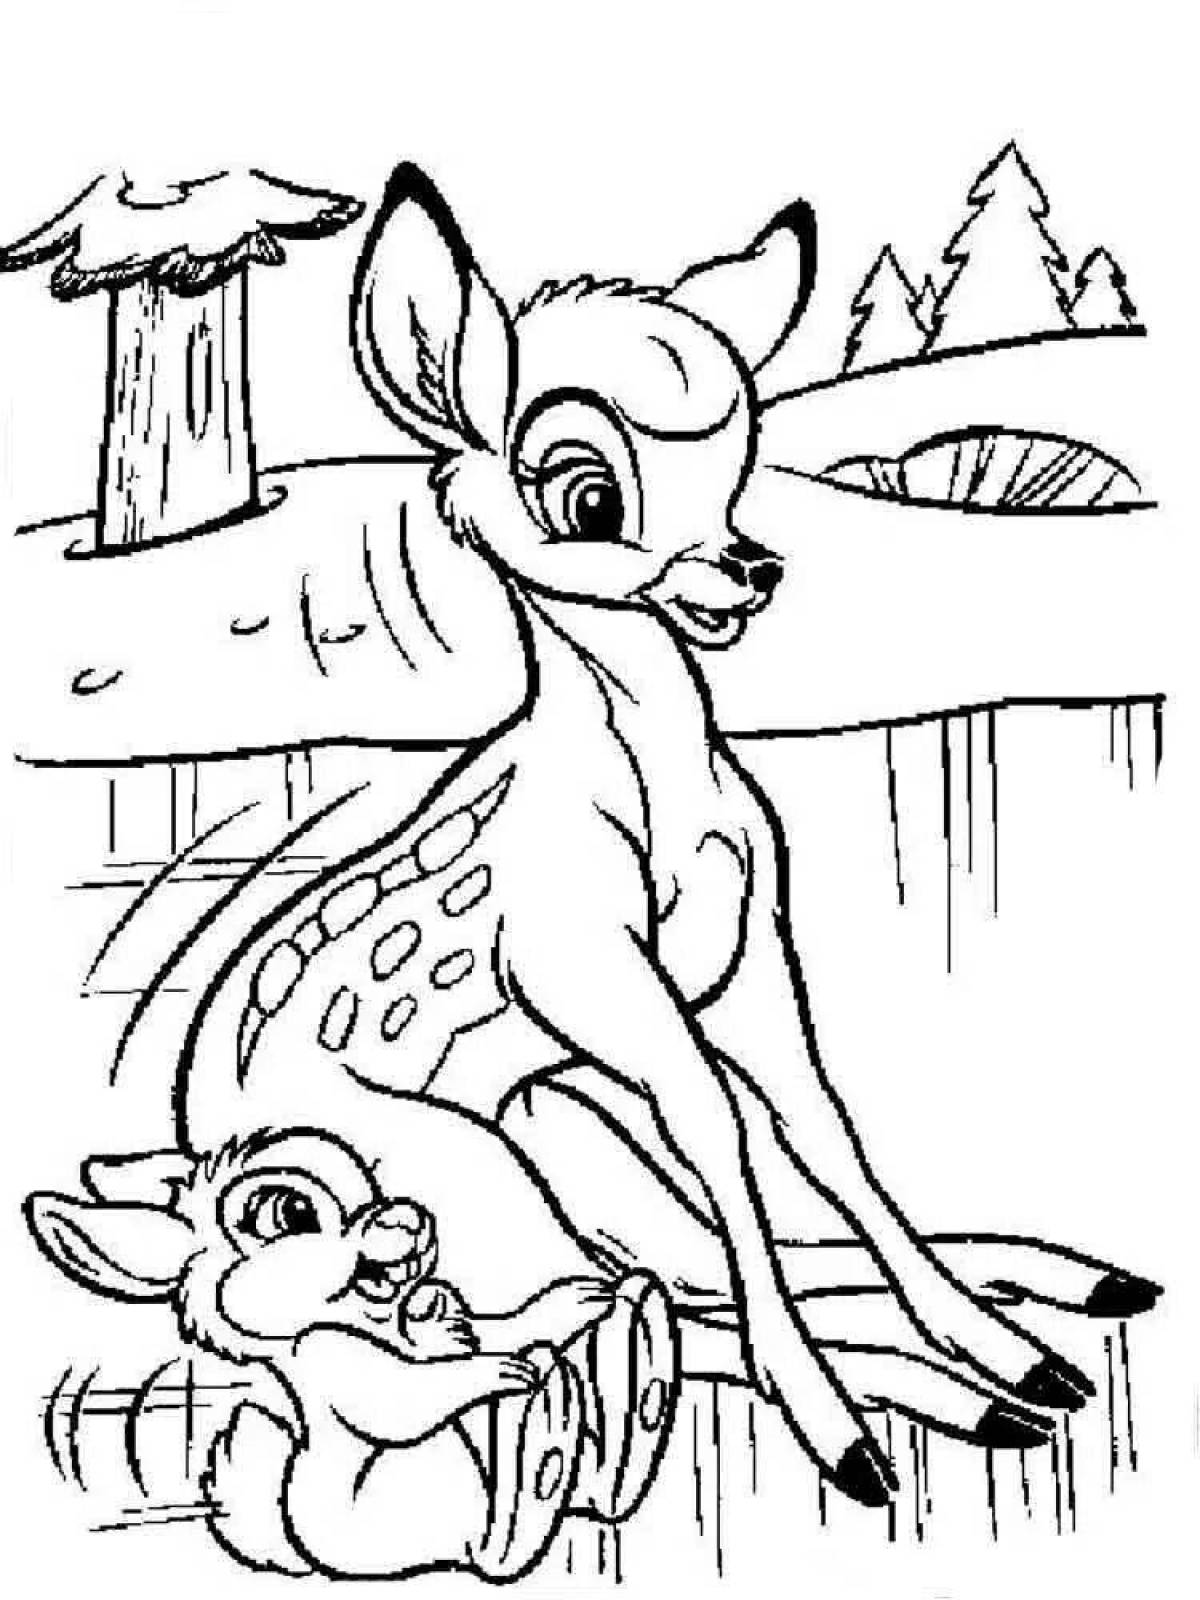 Coloring book sparkling bambi faun